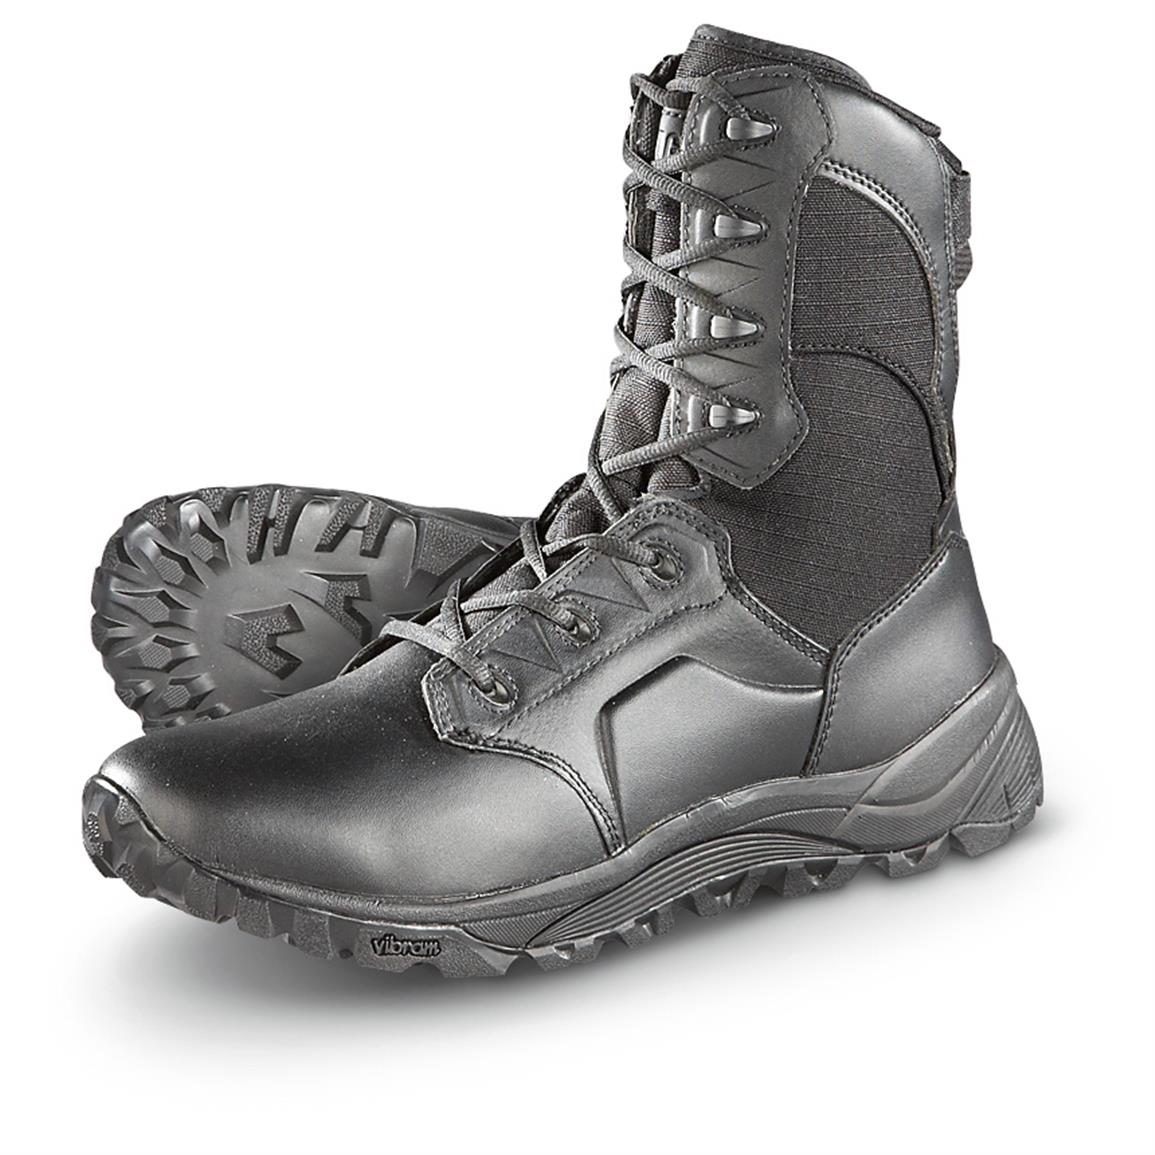 Men's Magnum Mach II 8.0 Side-zip Tactical Boots, Black - 615211 ...